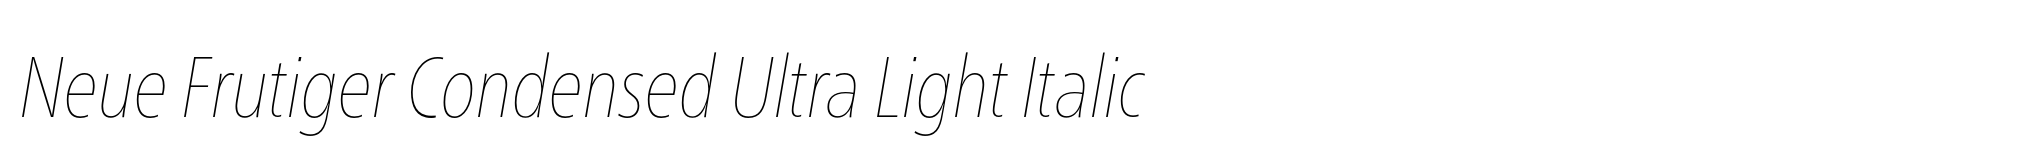 Neue Frutiger Condensed Ultra Light Italic image